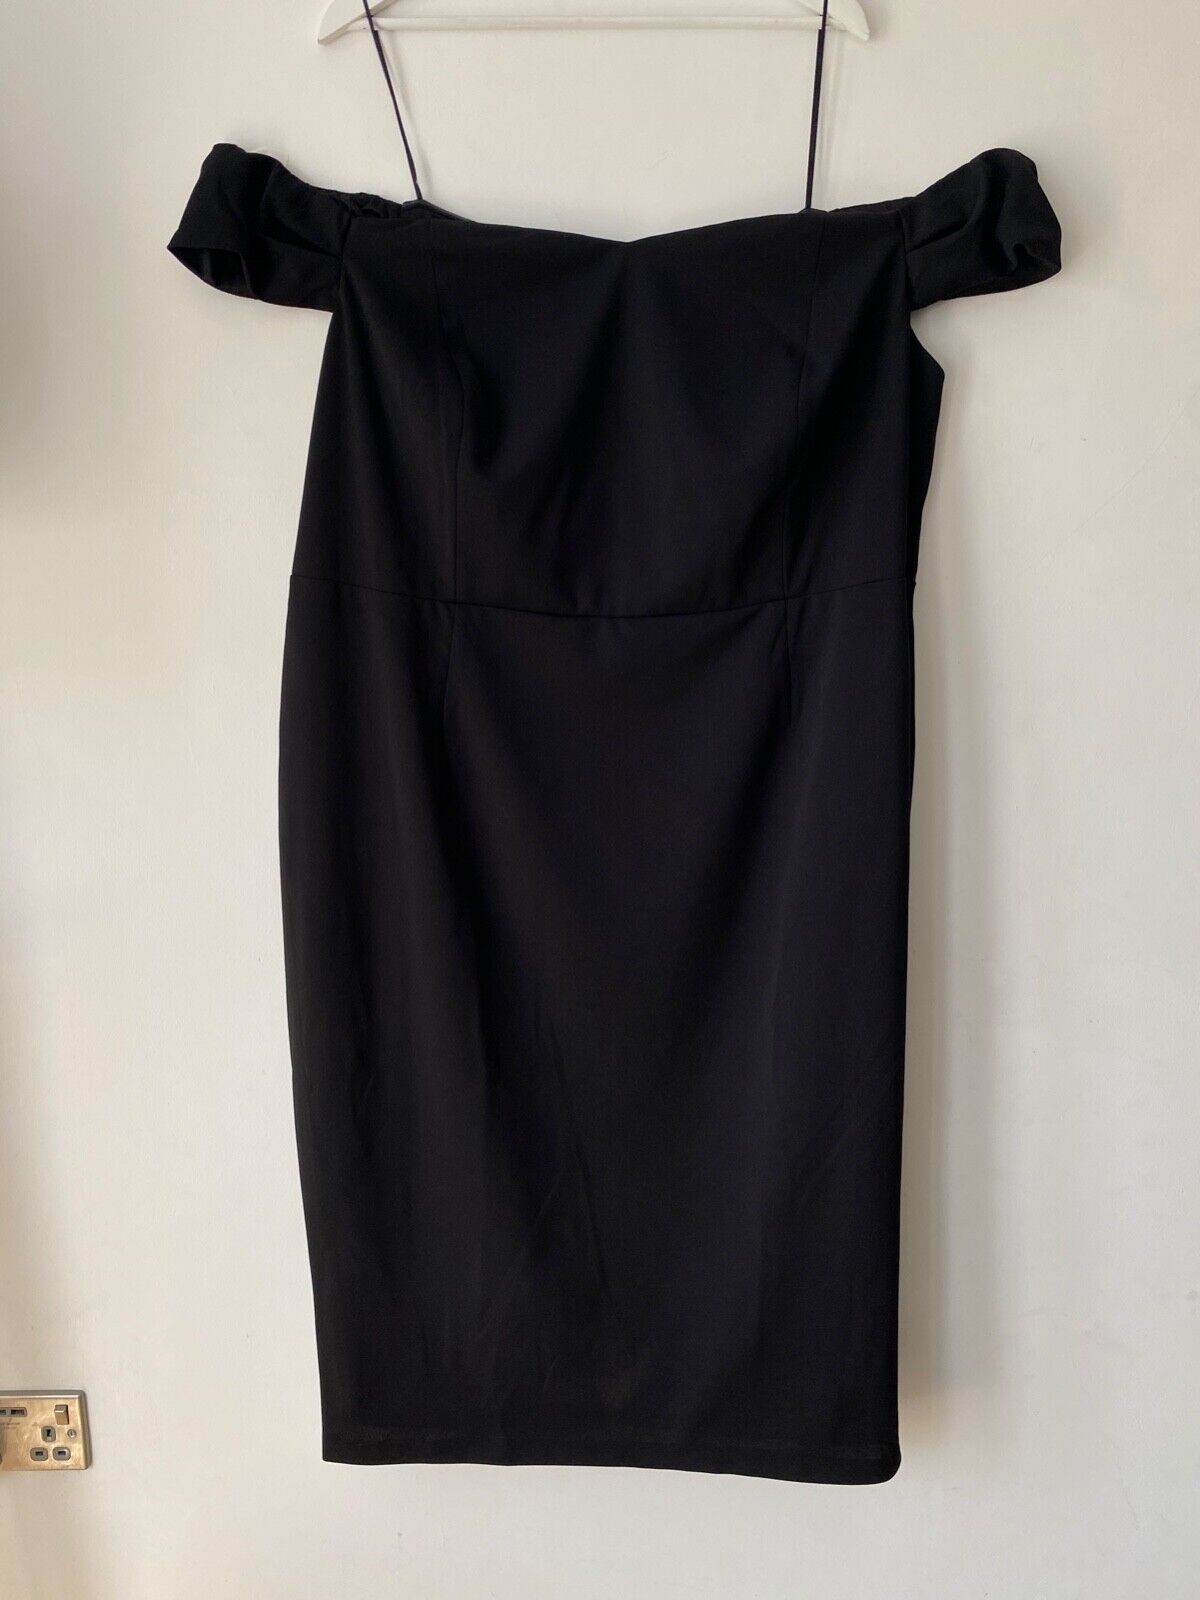 Very Black Off Shoulder Dress Size 28